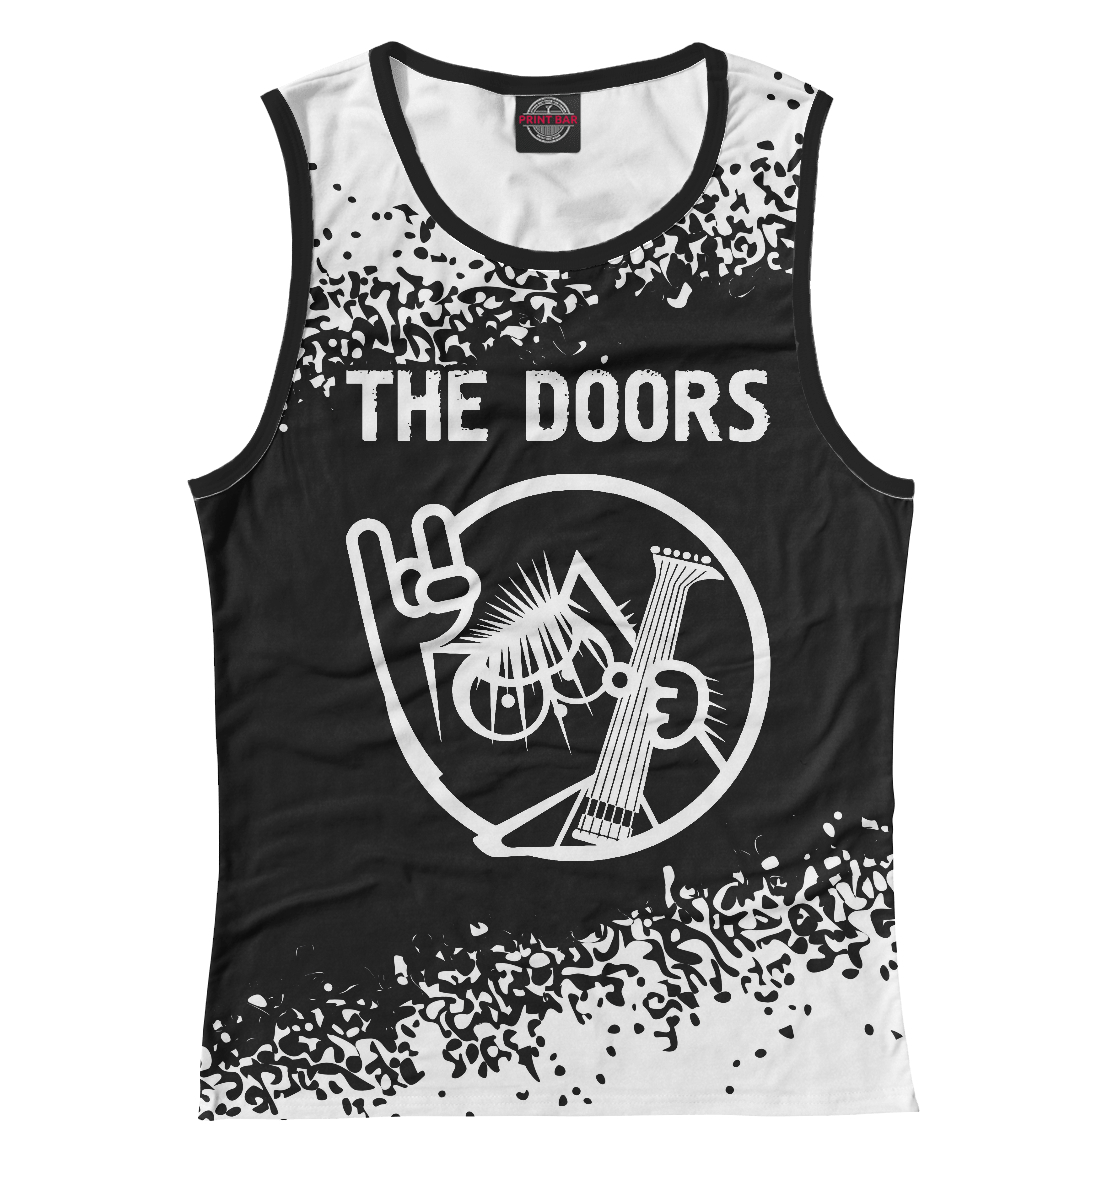 

The Doors - Кот